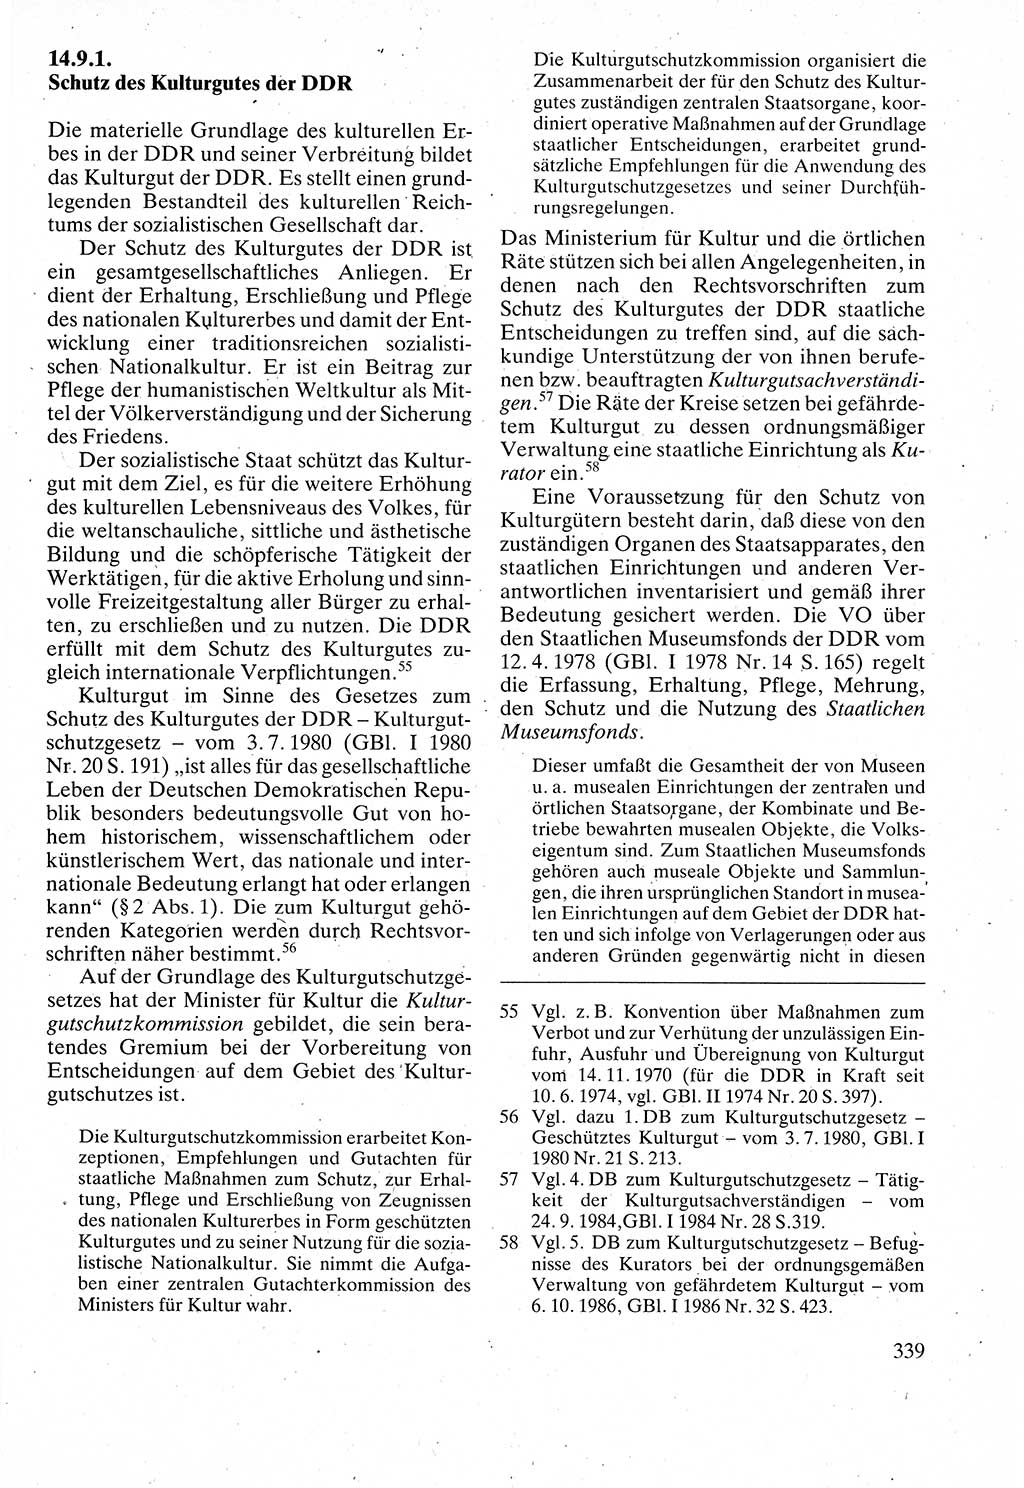 Verwaltungsrecht [Deutsche Demokratische Republik (DDR)], Lehrbuch 1988, Seite 339 (Verw.-R. DDR Lb. 1988, S. 339)